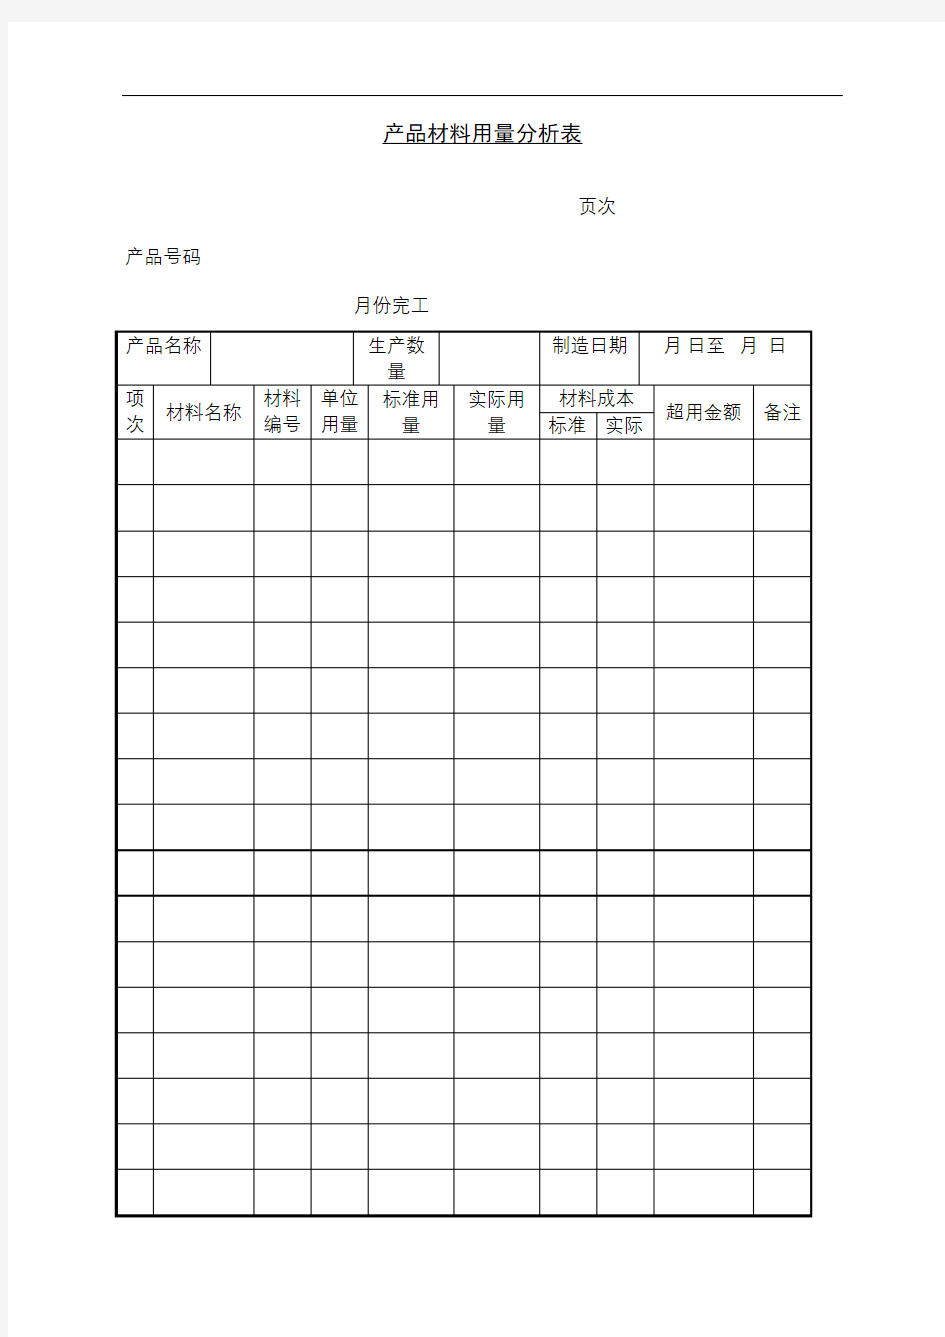 产品材料用量分析表表格格式